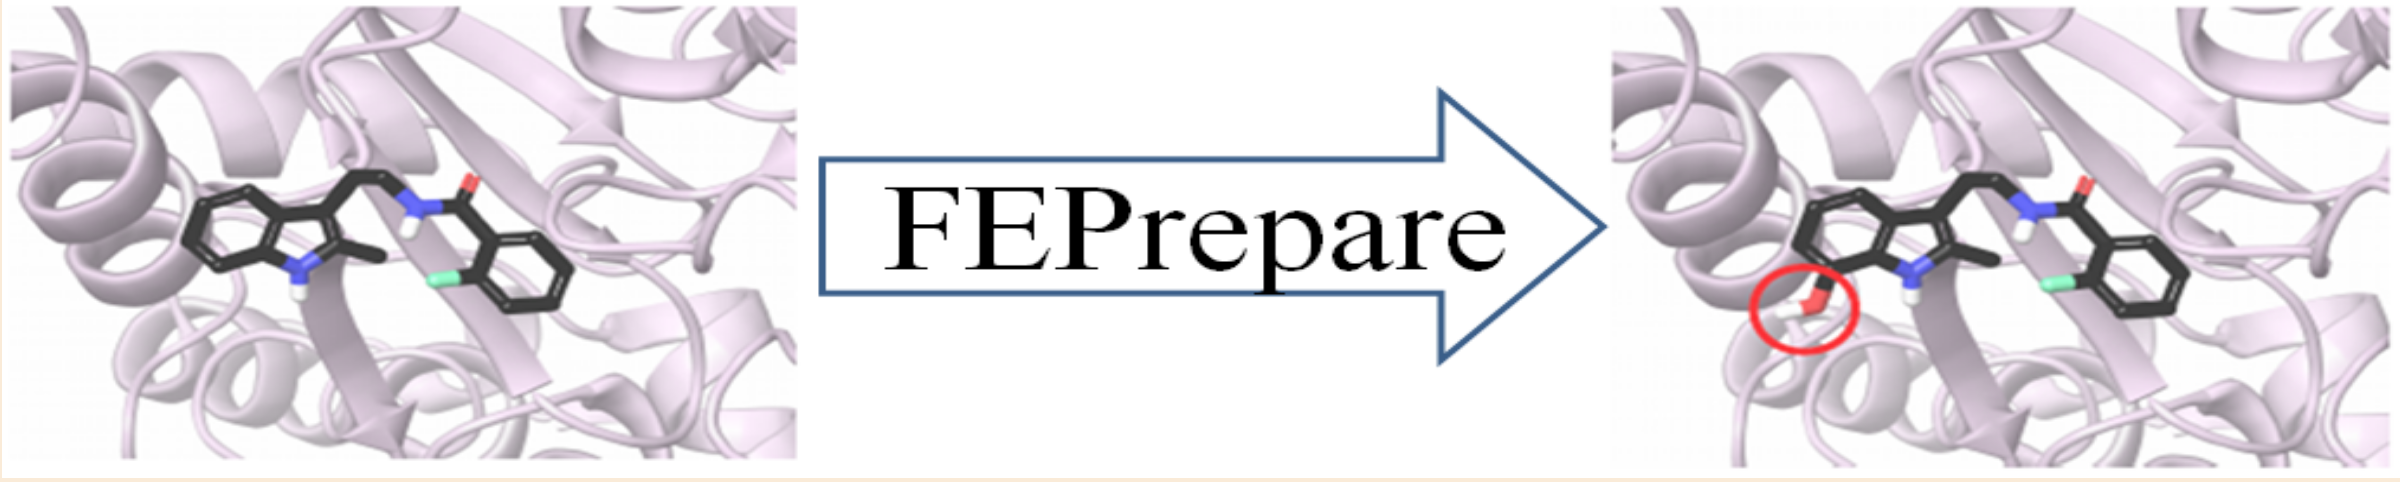 FEPrepare-Logo.png